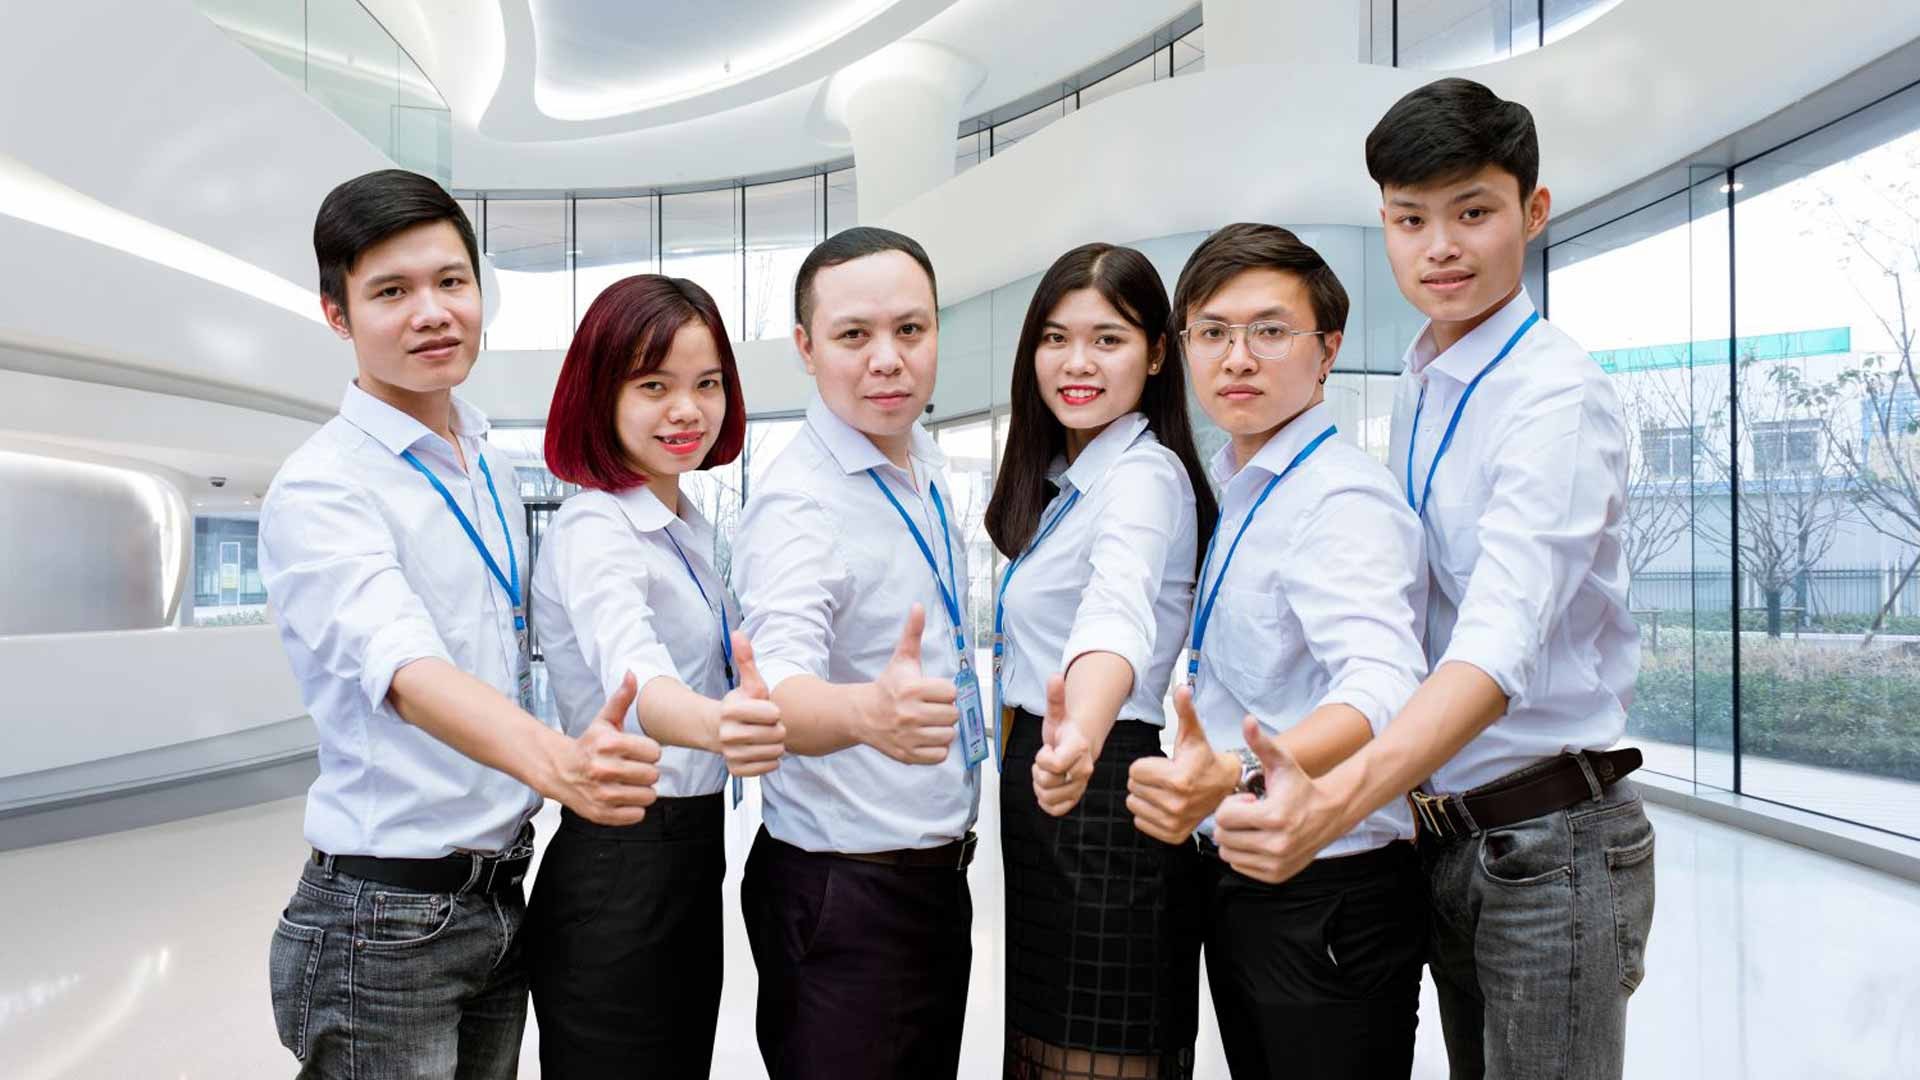 Lao đao tìm trung tâm tiếng Anh cho người đi làm tại quận Ngũ Hành Sơn – Đà Nẵng